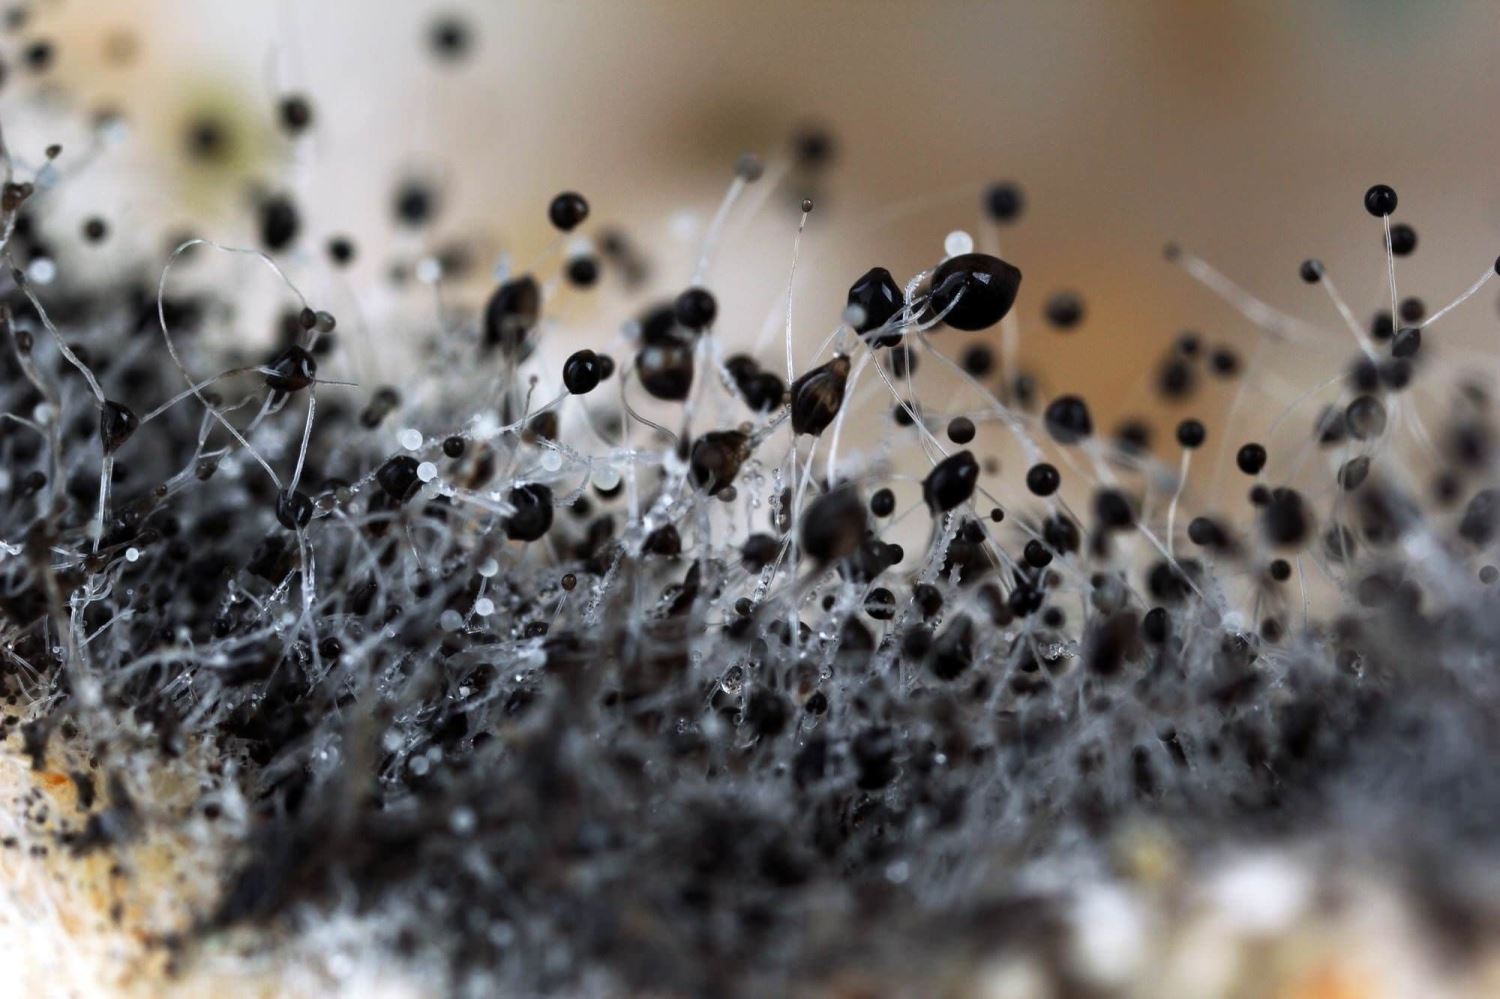 Close-up of mold spores